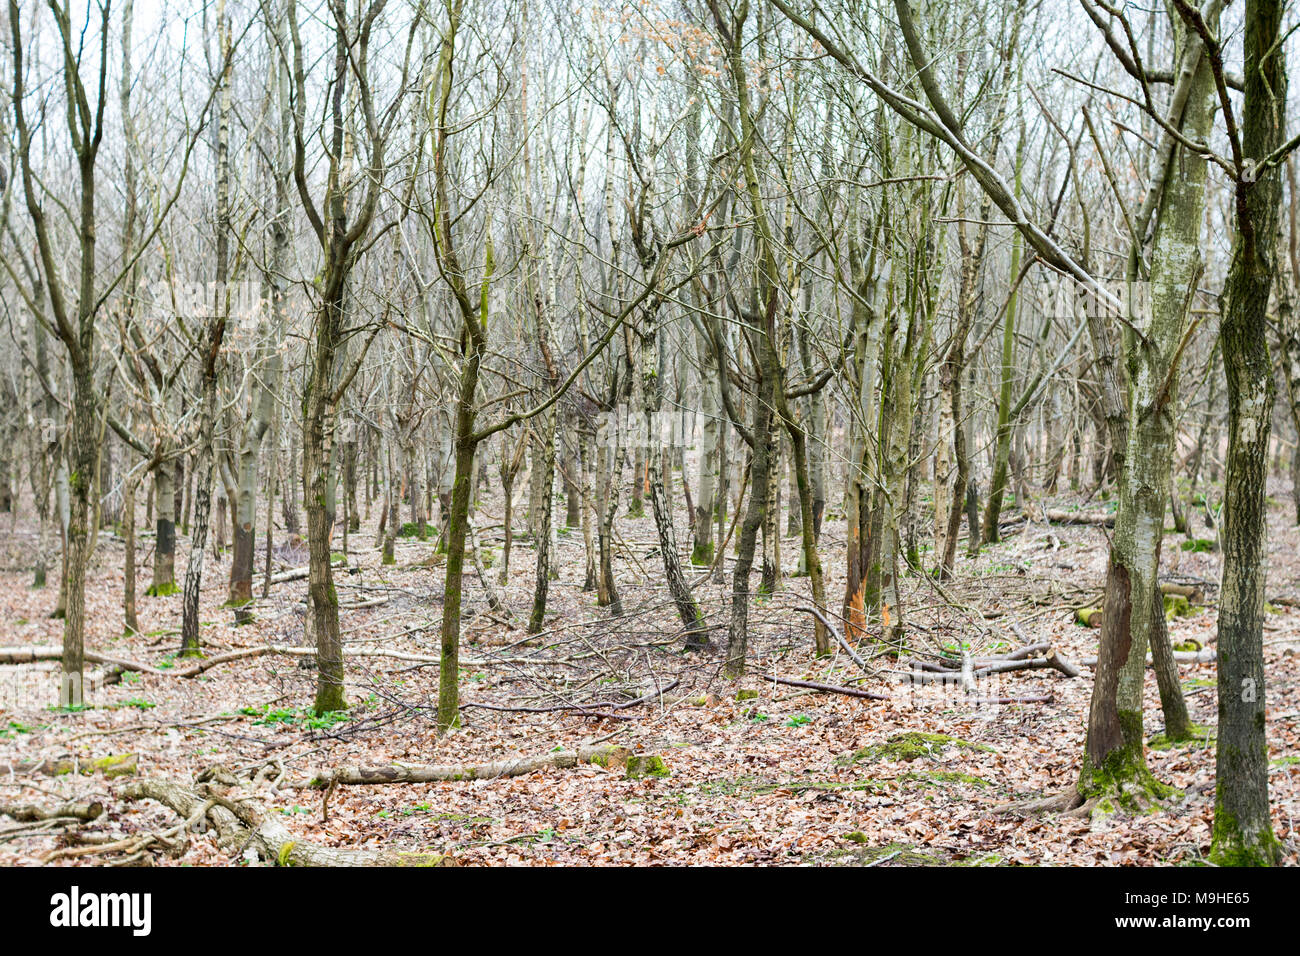 Ceduo di argento betulle e altri alberi giovani in primavera, con i cervi-tronchi danneggiati e un letto di foglie cadute, intorno a loro. Foto Stock